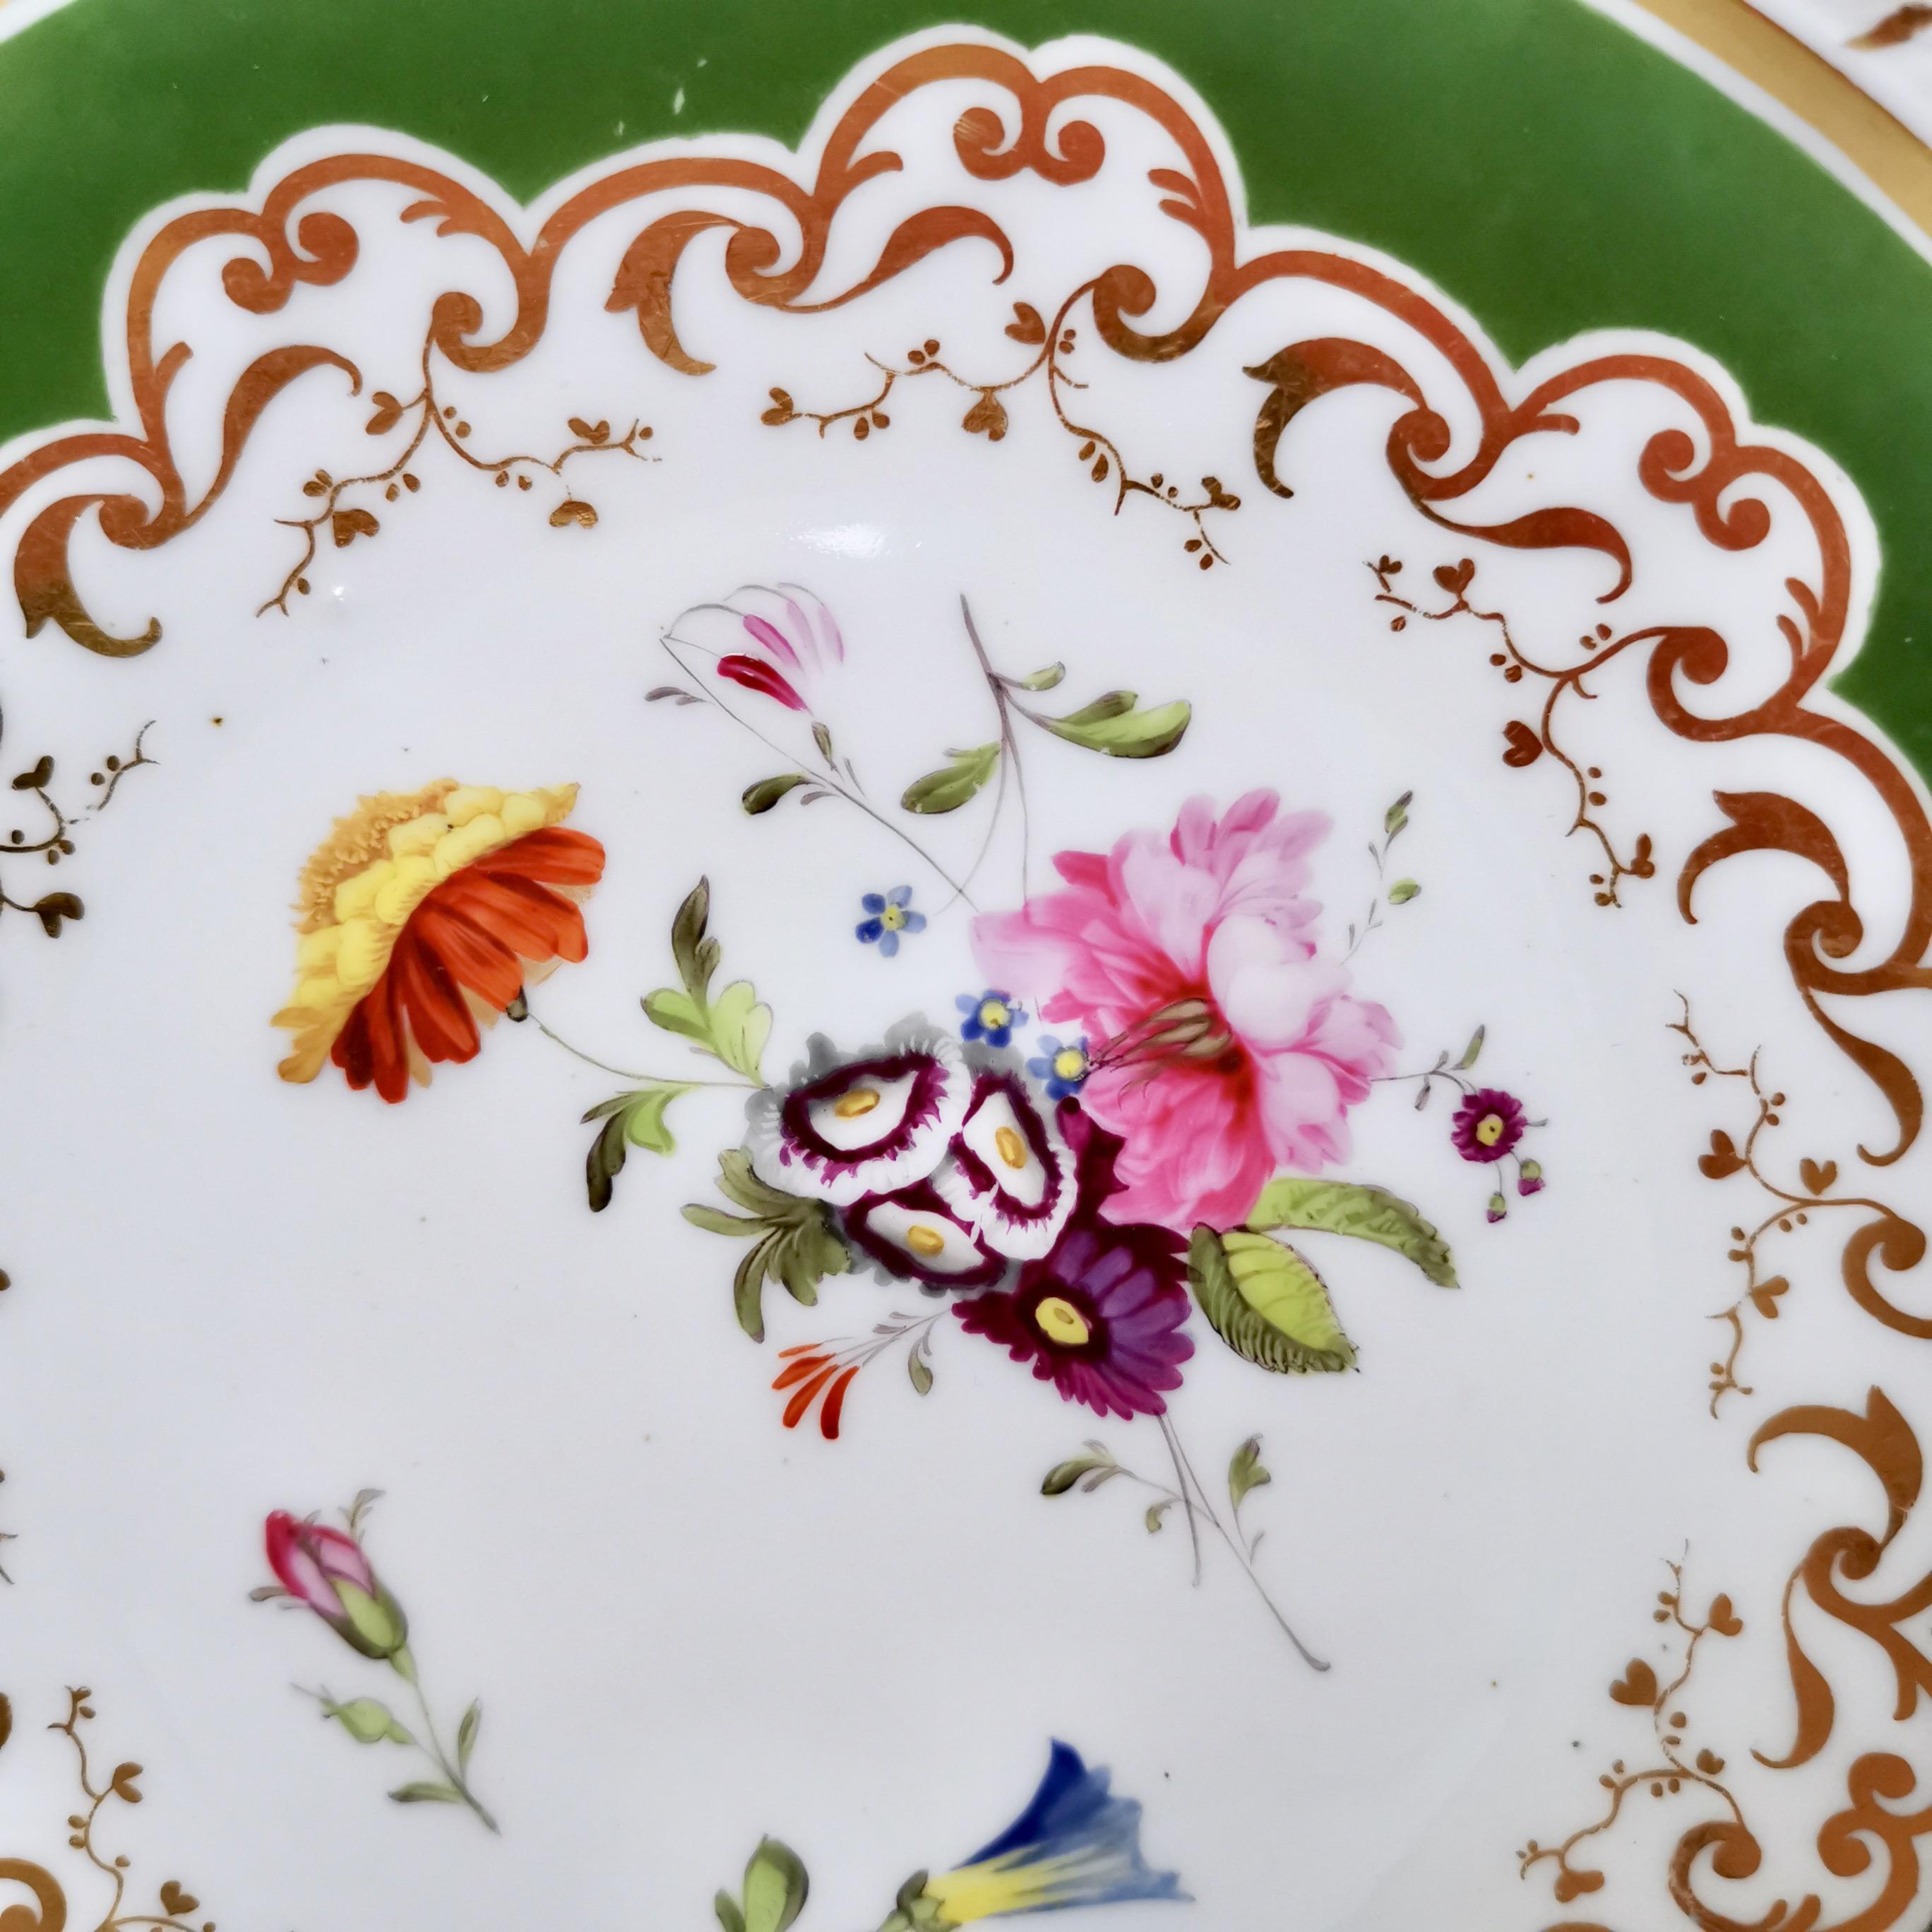 Il s'agit d'une très belle assiette fabriquée par Ridgway vers 1825, période connue sous le nom de Regency. L'assiette a un fond vert foncé et des fleurs peintes à la main. Elle aurait fait partie d'un grand service à thé.
 
Le numéro du modèle